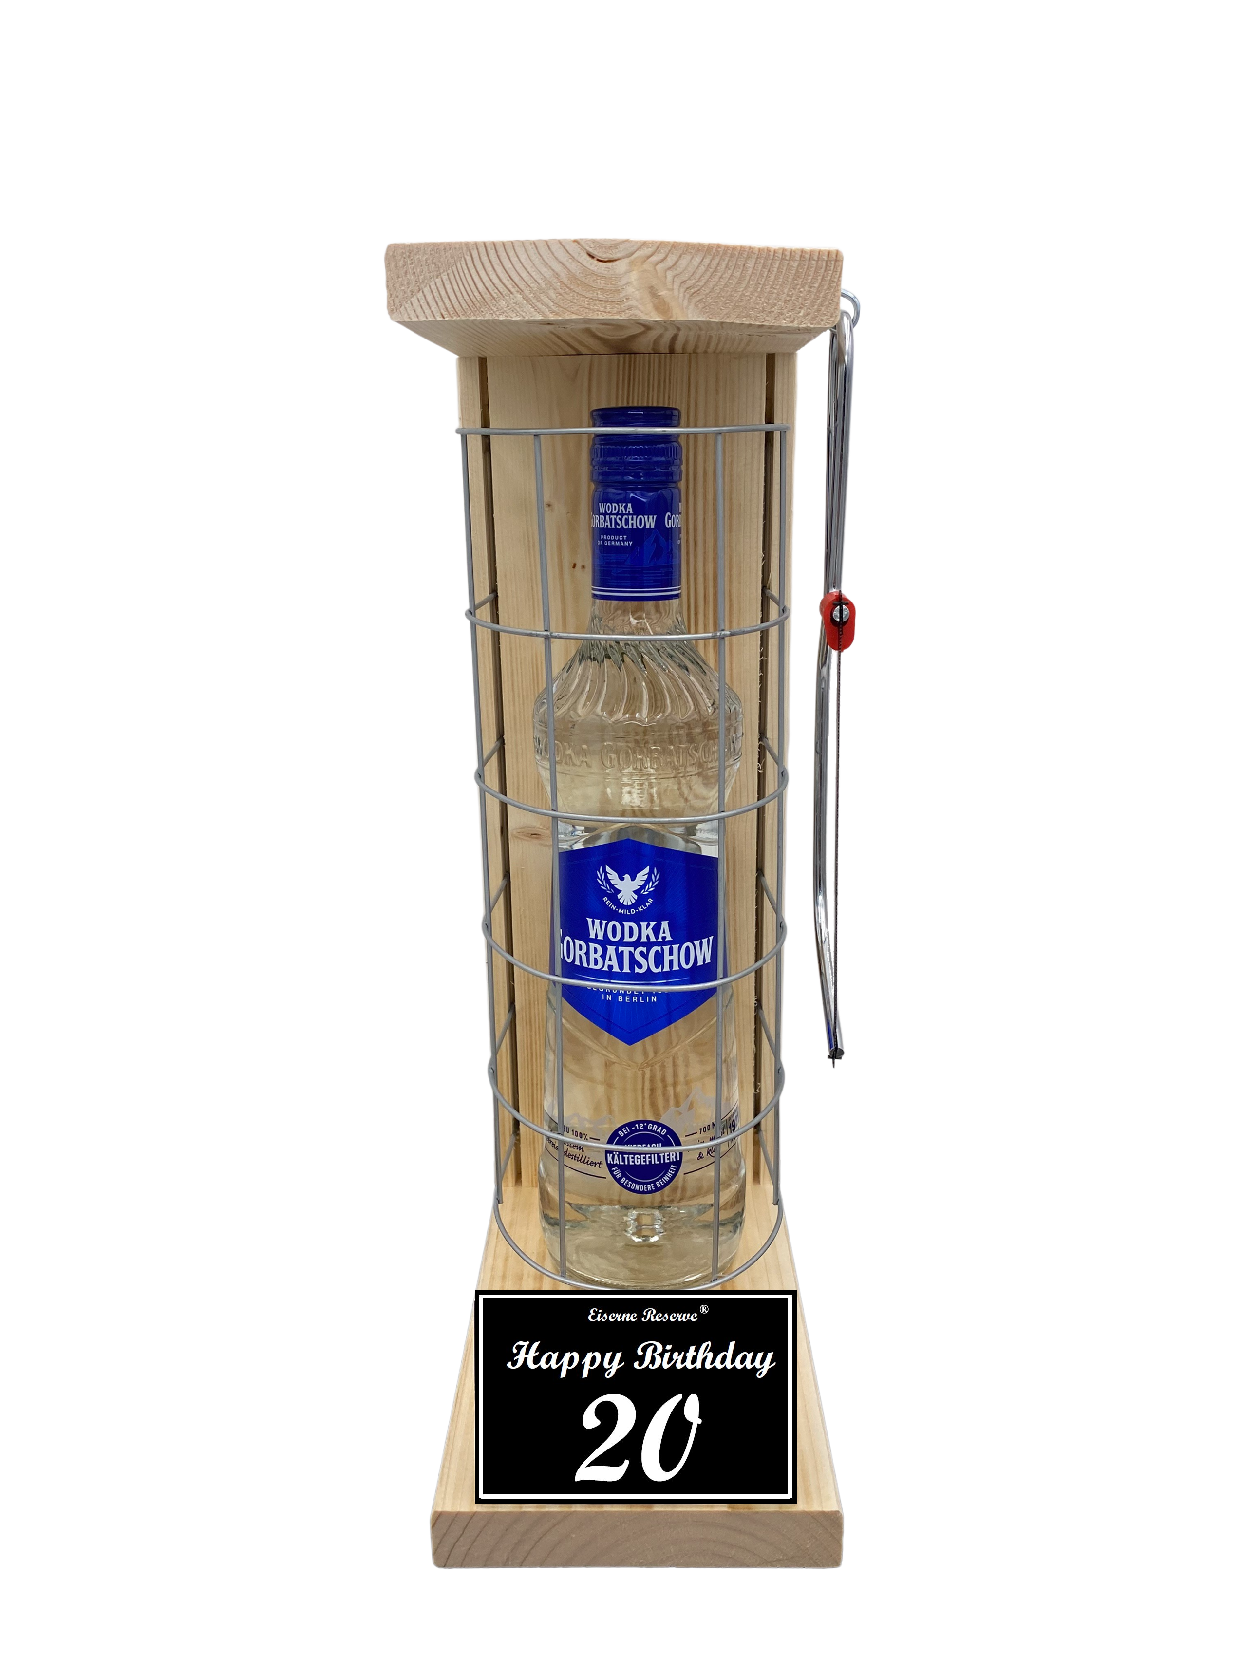 Wodka Geschenk zum 20 Geburtstag - Eiserne Reserve Gitterkäfig